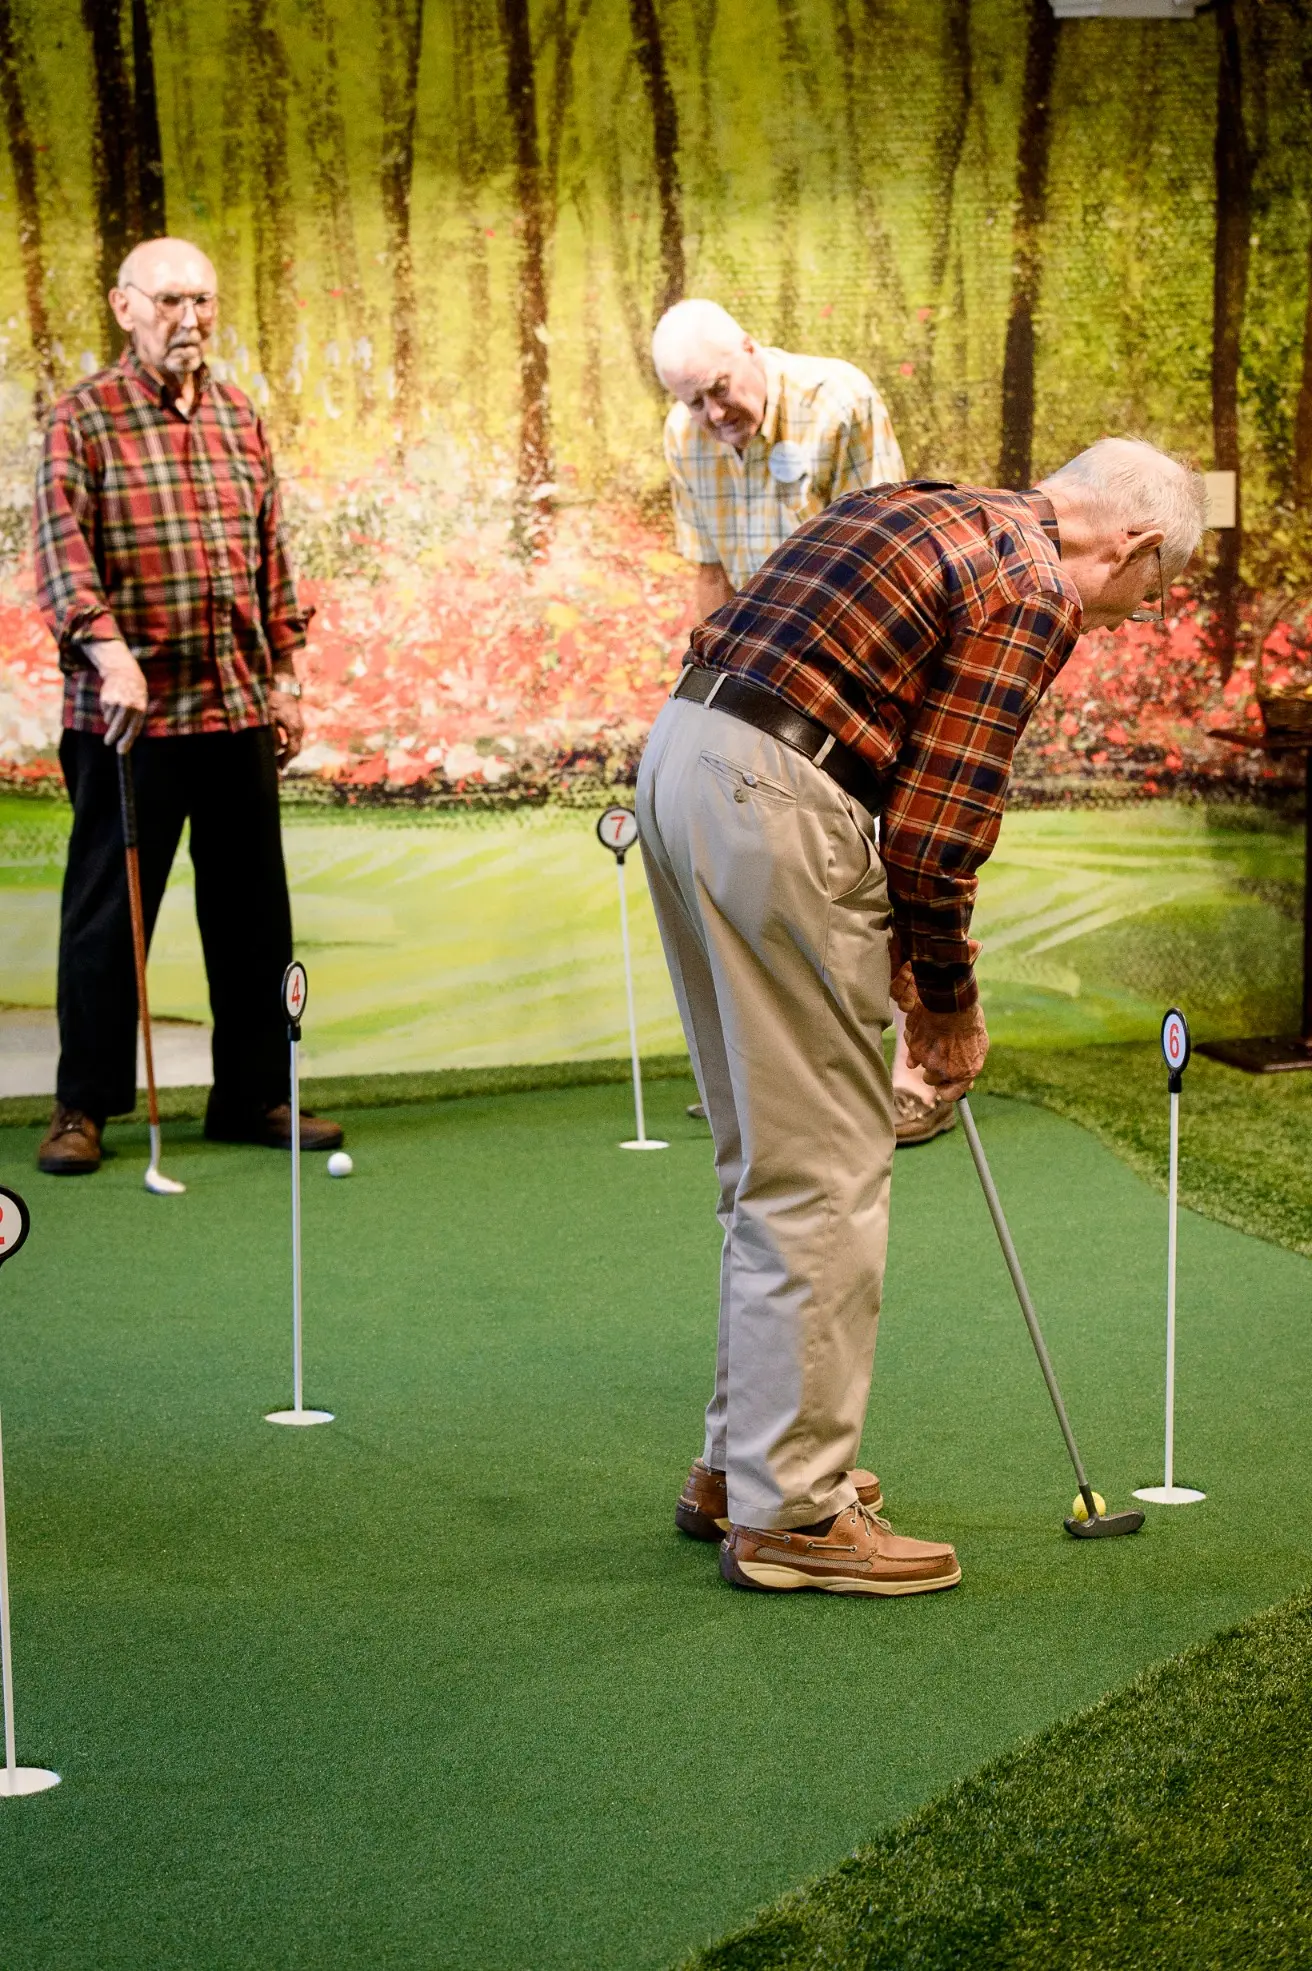 Seniors golfing at a senior living community in Niceville, FL